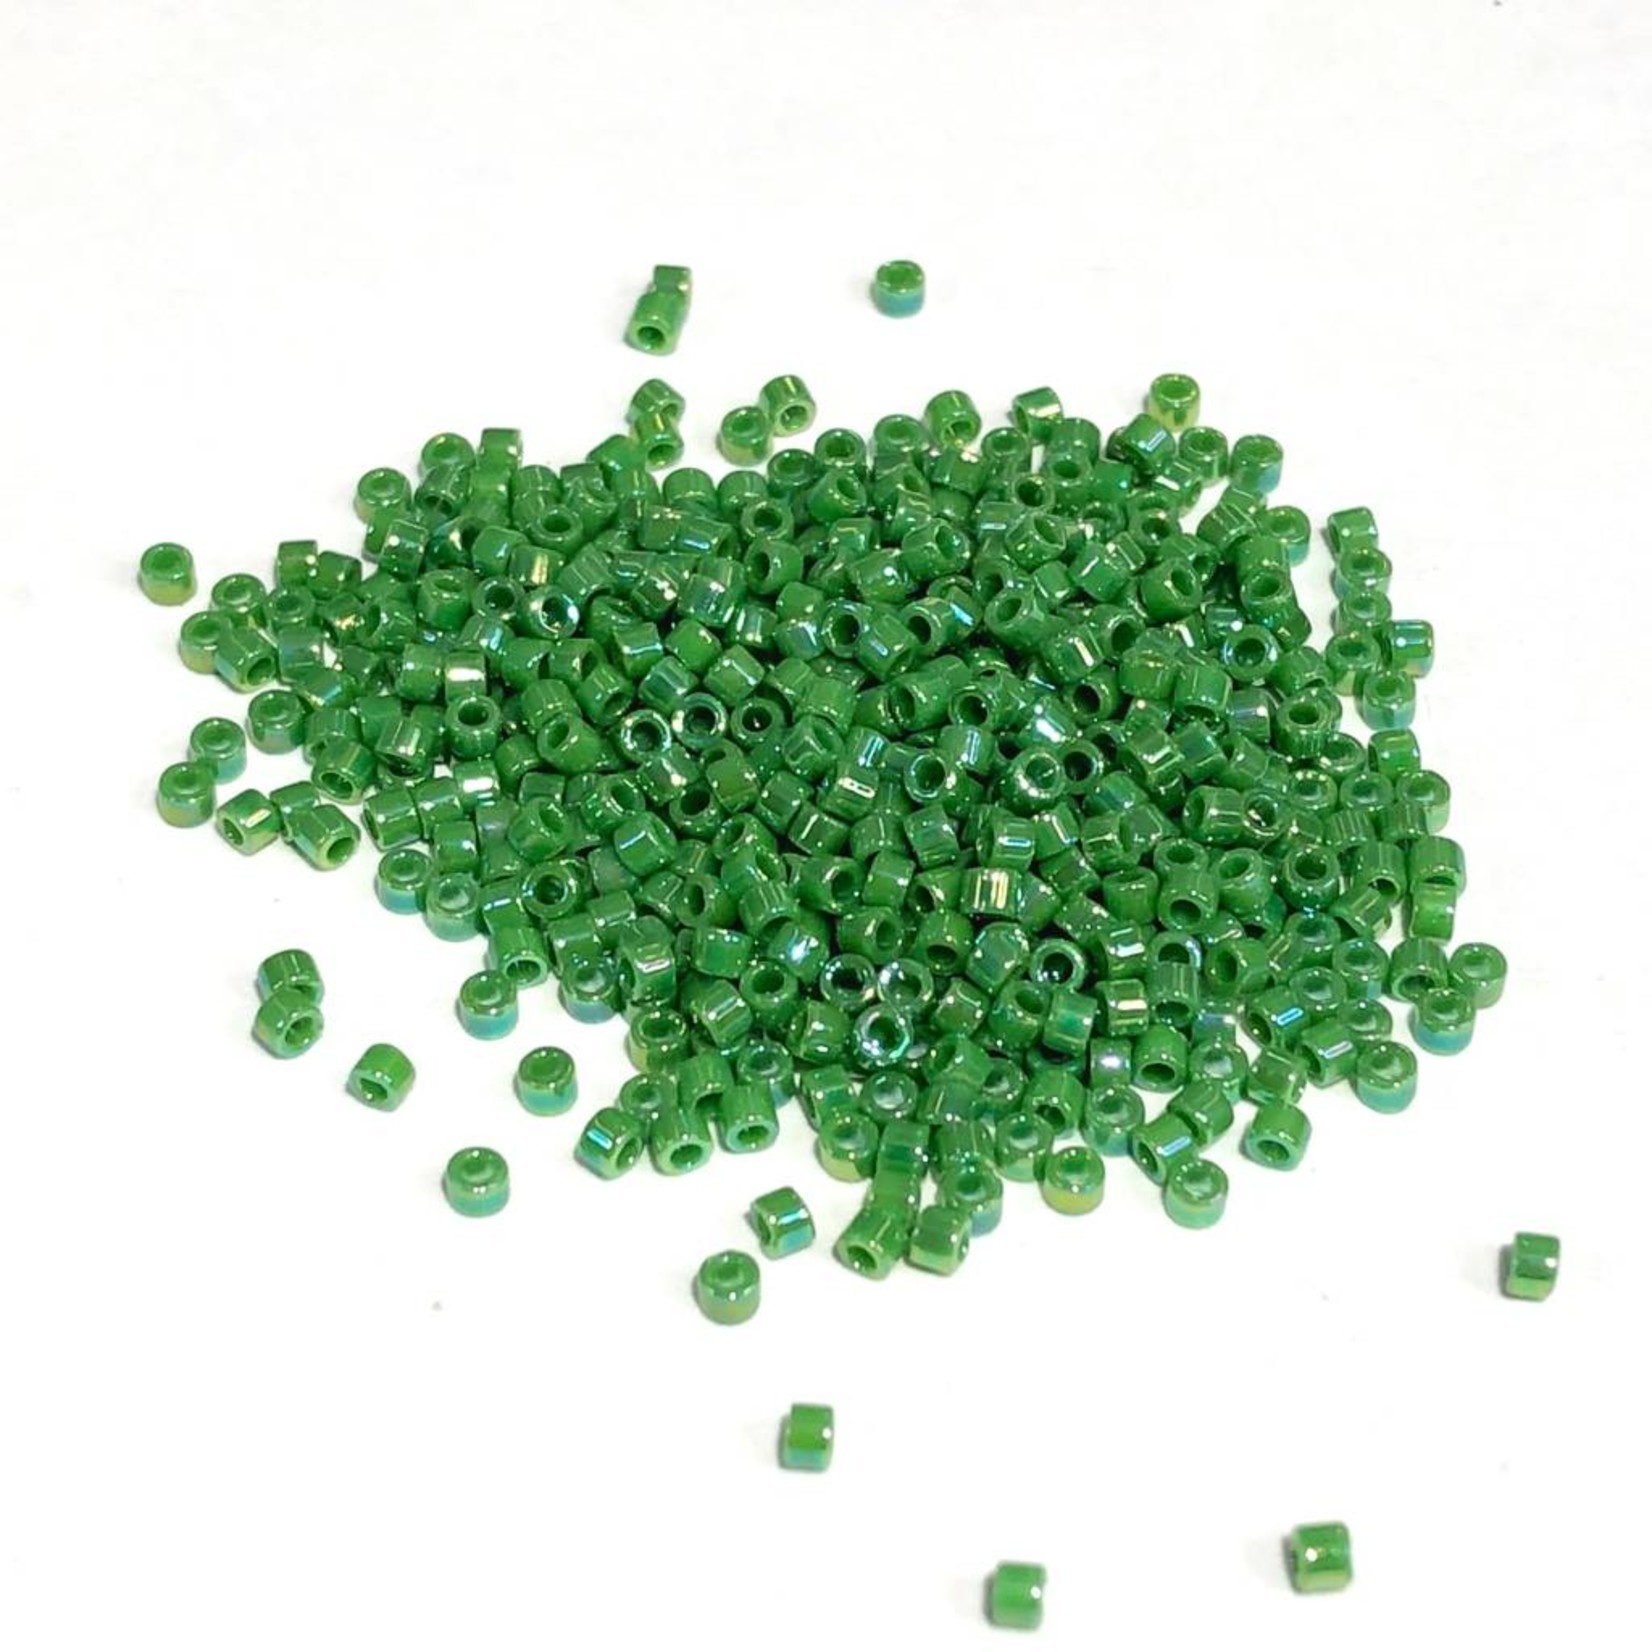 MIYUKI Delica 11-0 Opaque Green AB 10g